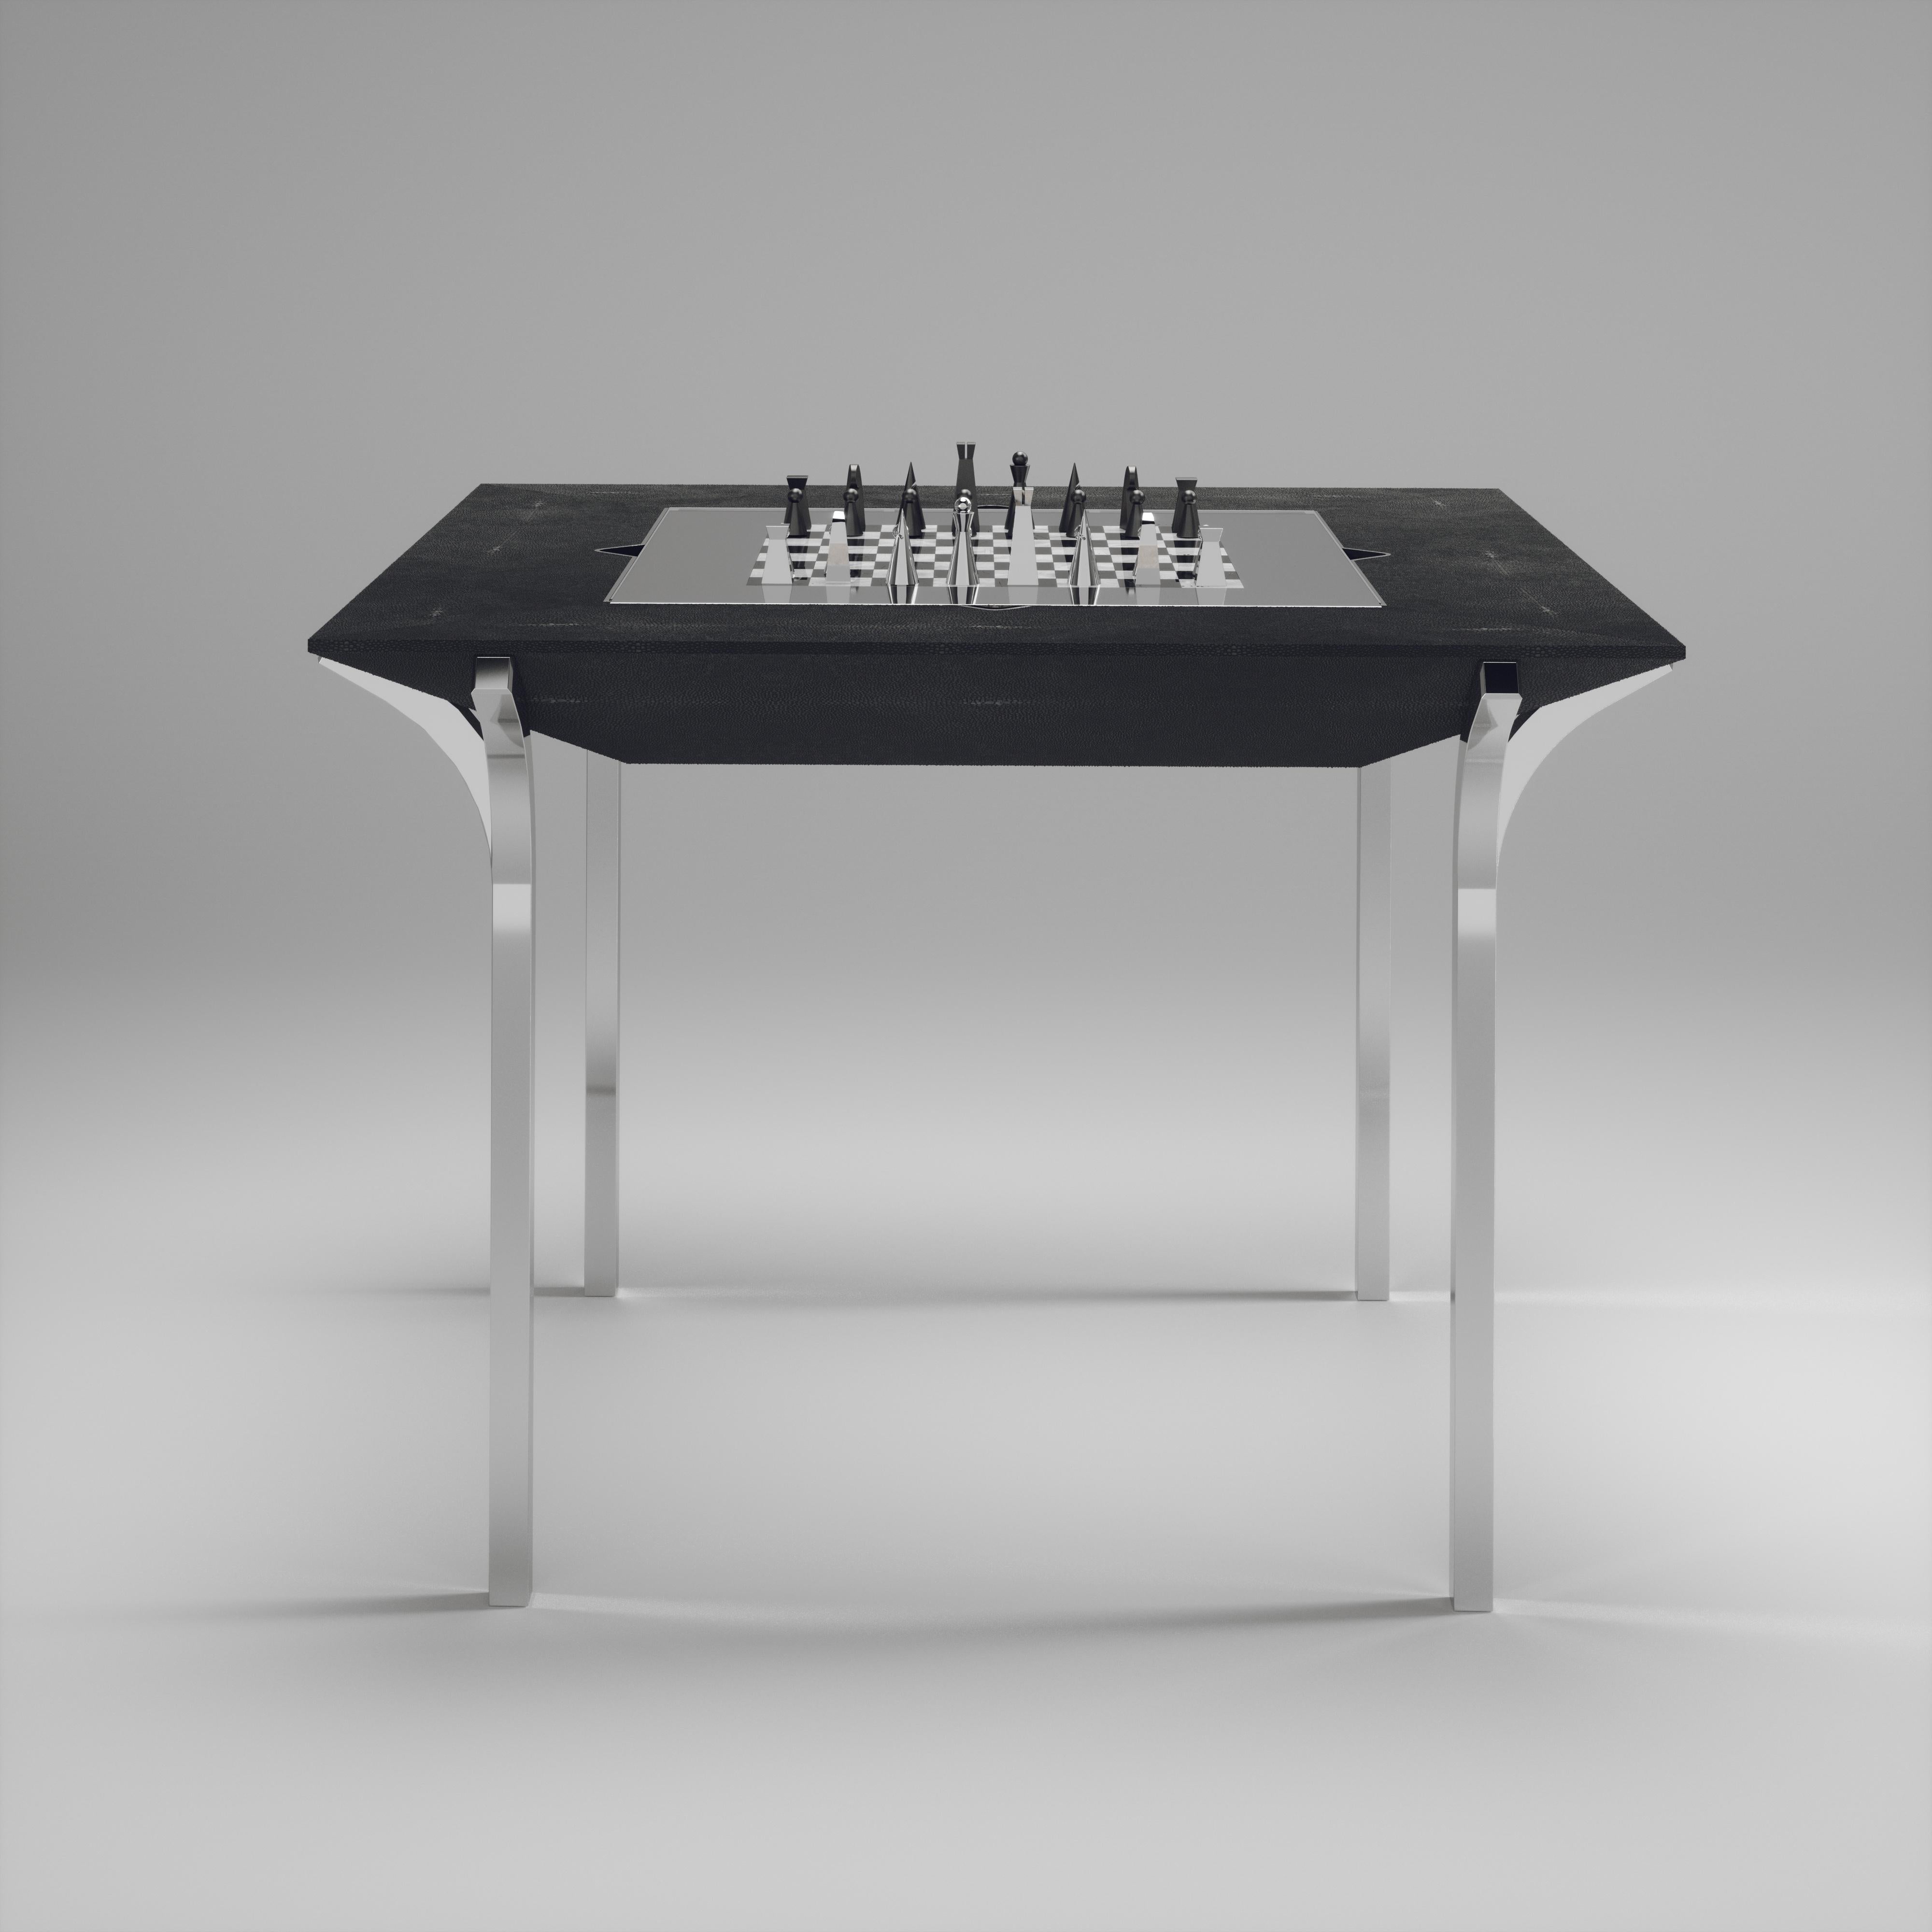 Der 4 in 1 Marcel Game Tisch R&Y Augousti ist ein wahrhaft luxuriöses Schmuckstück für Ihr Zuhause. Die klaren Linien des gesamten Möbelstücks in kohlschwarzem Chagrin, akzentuiert durch die skulpturalen und schlanken Beine aus poliertem Edelstahl